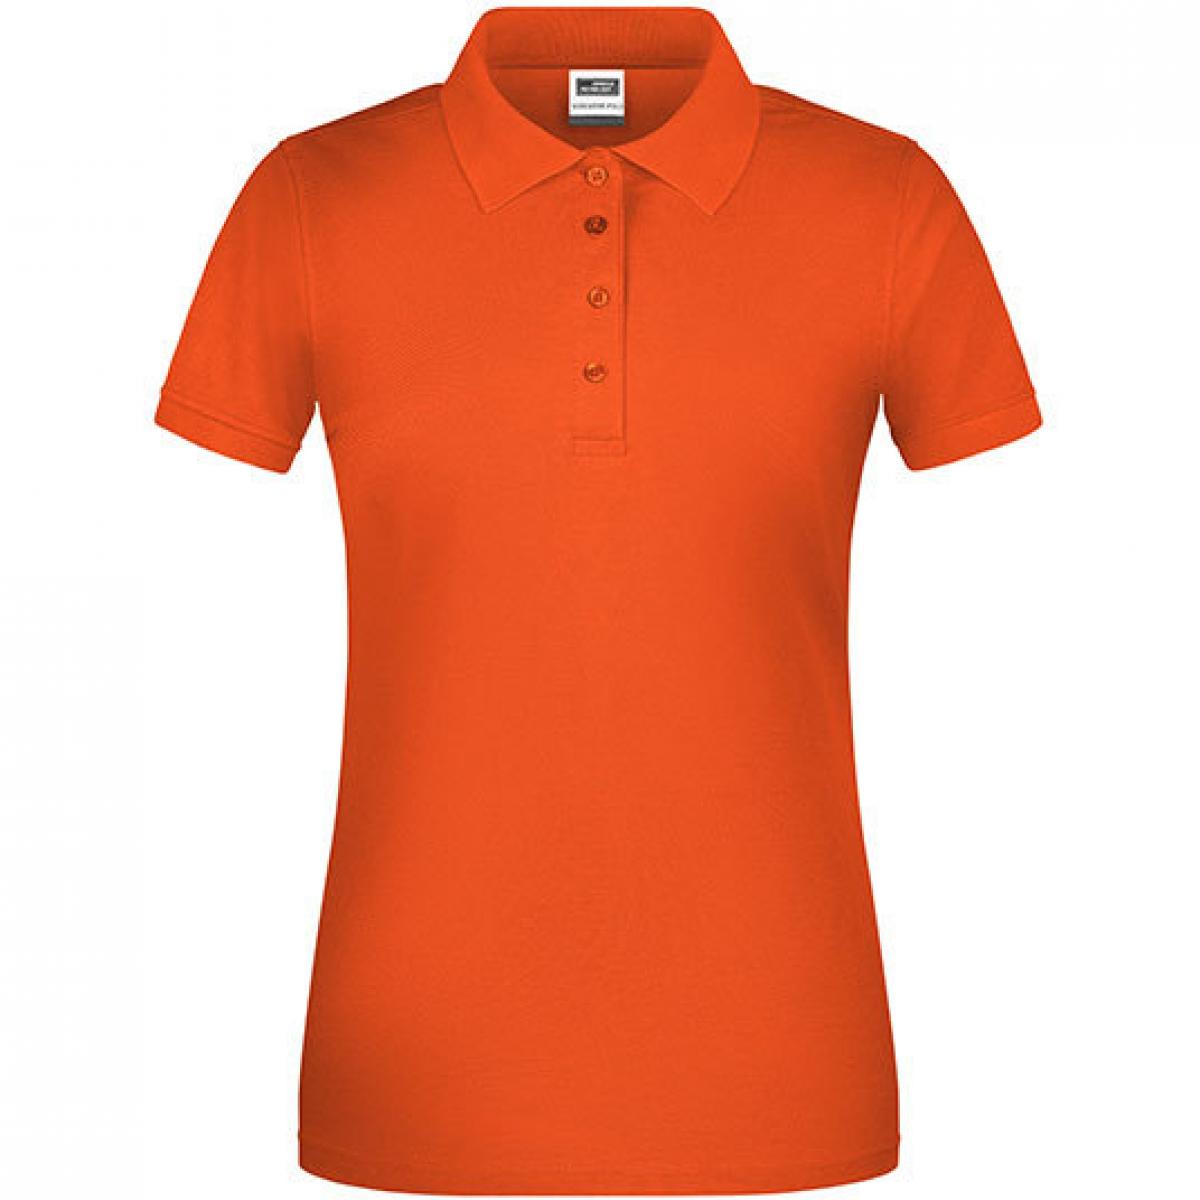 Hersteller: James+Nicholson Herstellernummer: JN873 Artikelbezeichnung: Damen Bio Workwear Polo, Waschbar bis 60 °C Farbe: Orange